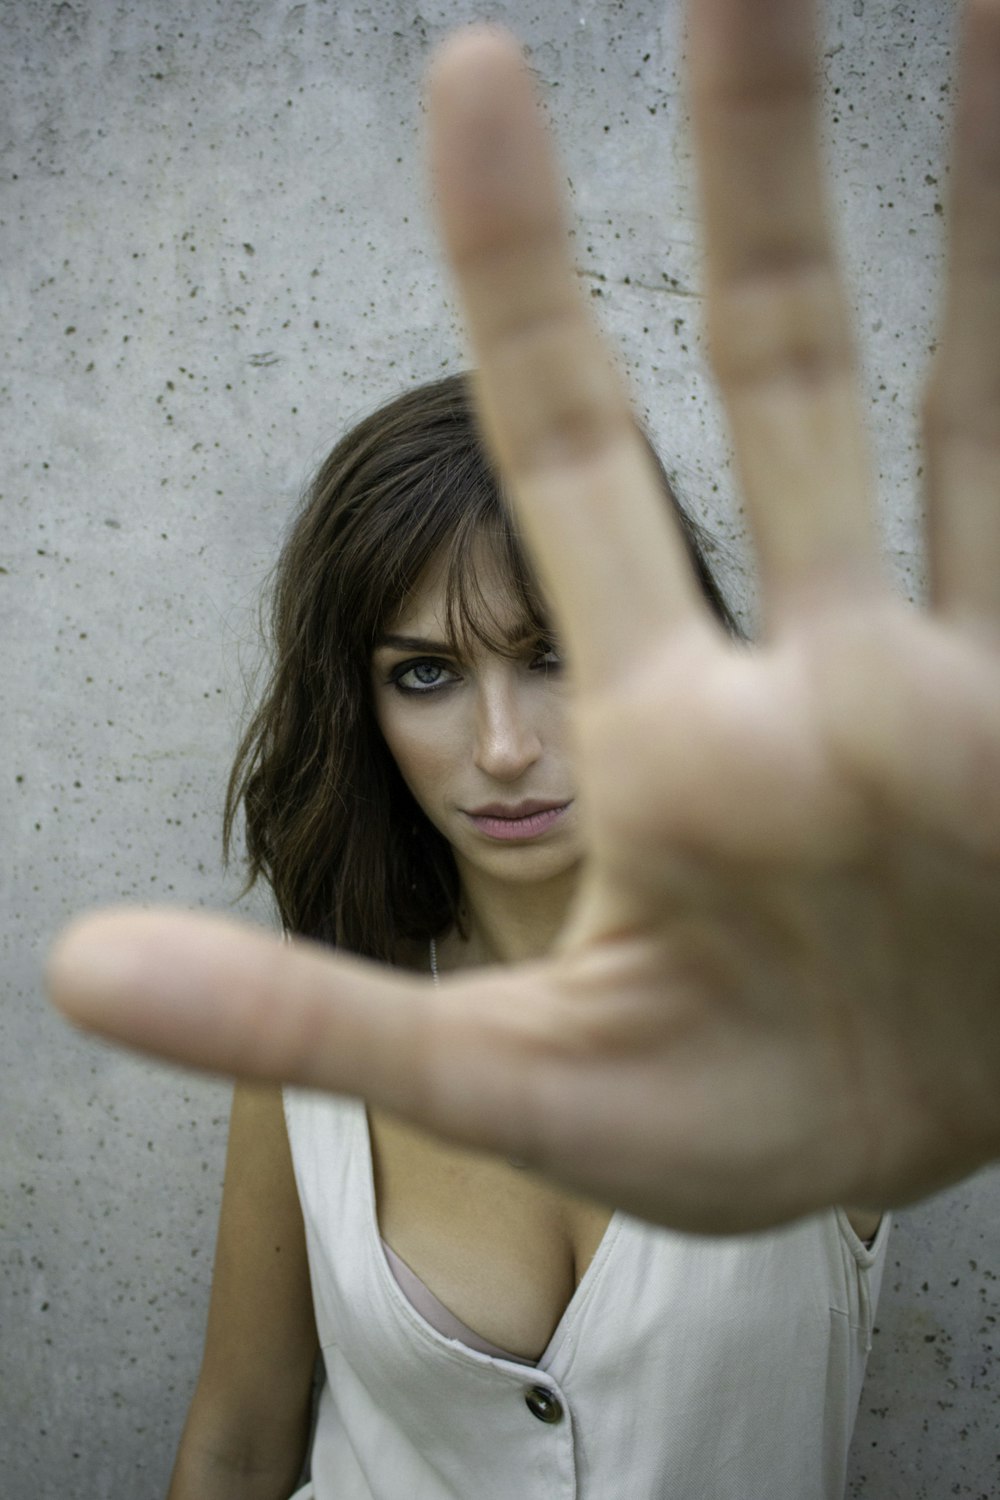 glaring woman reaching her hand